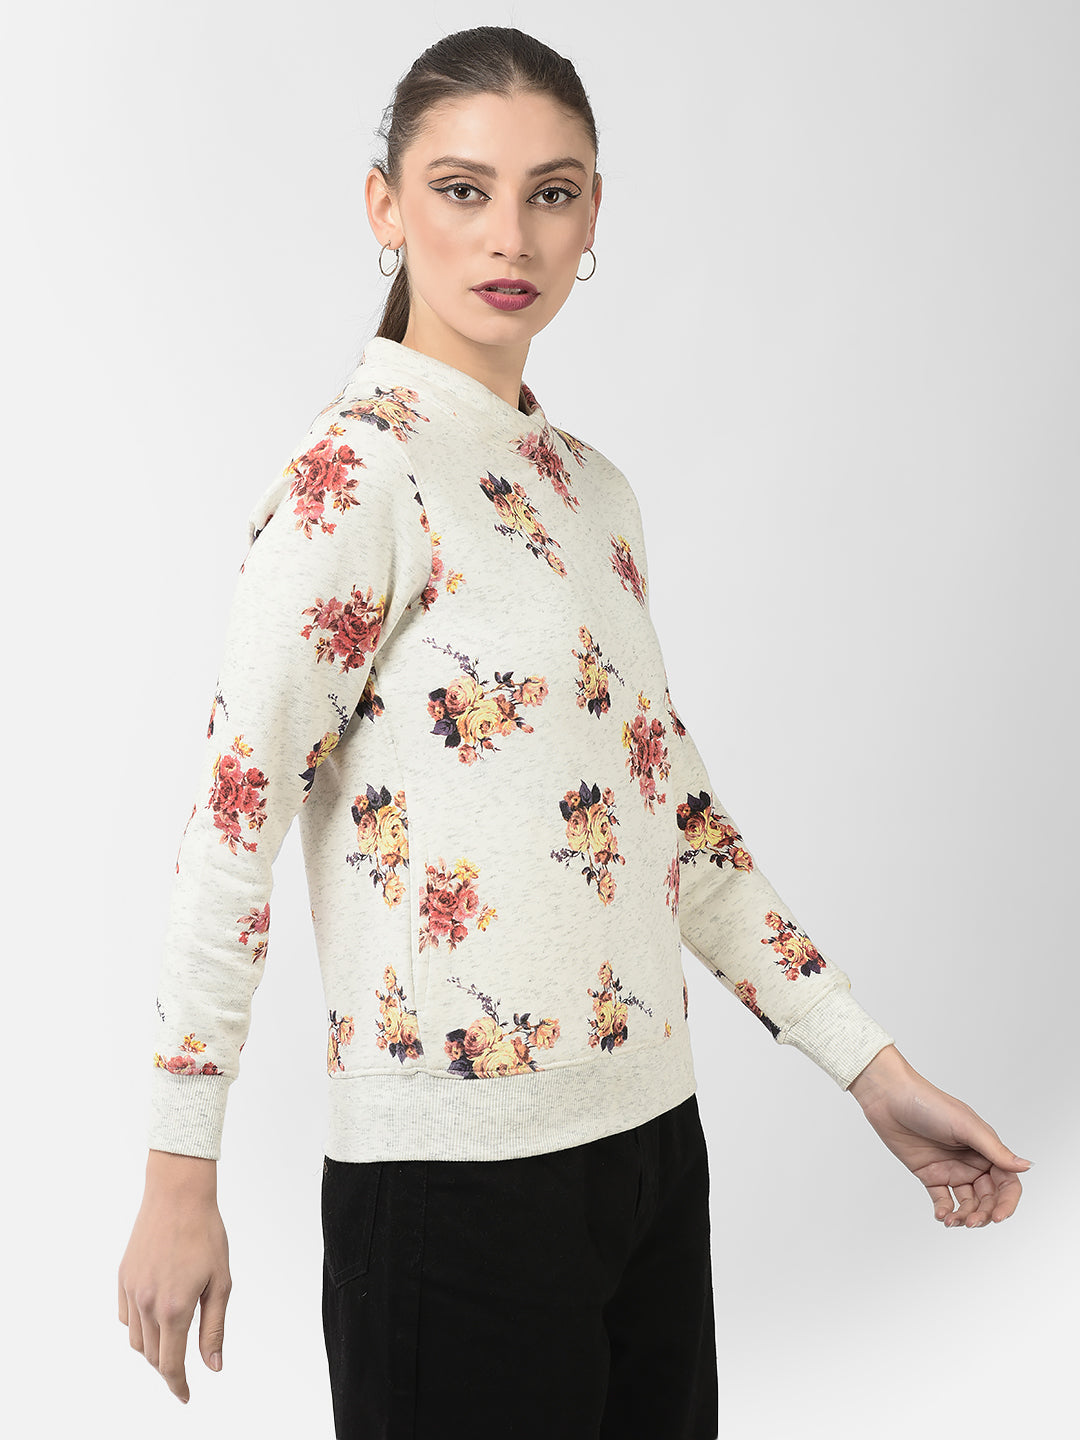  Off-White Floral Sweatshirt 